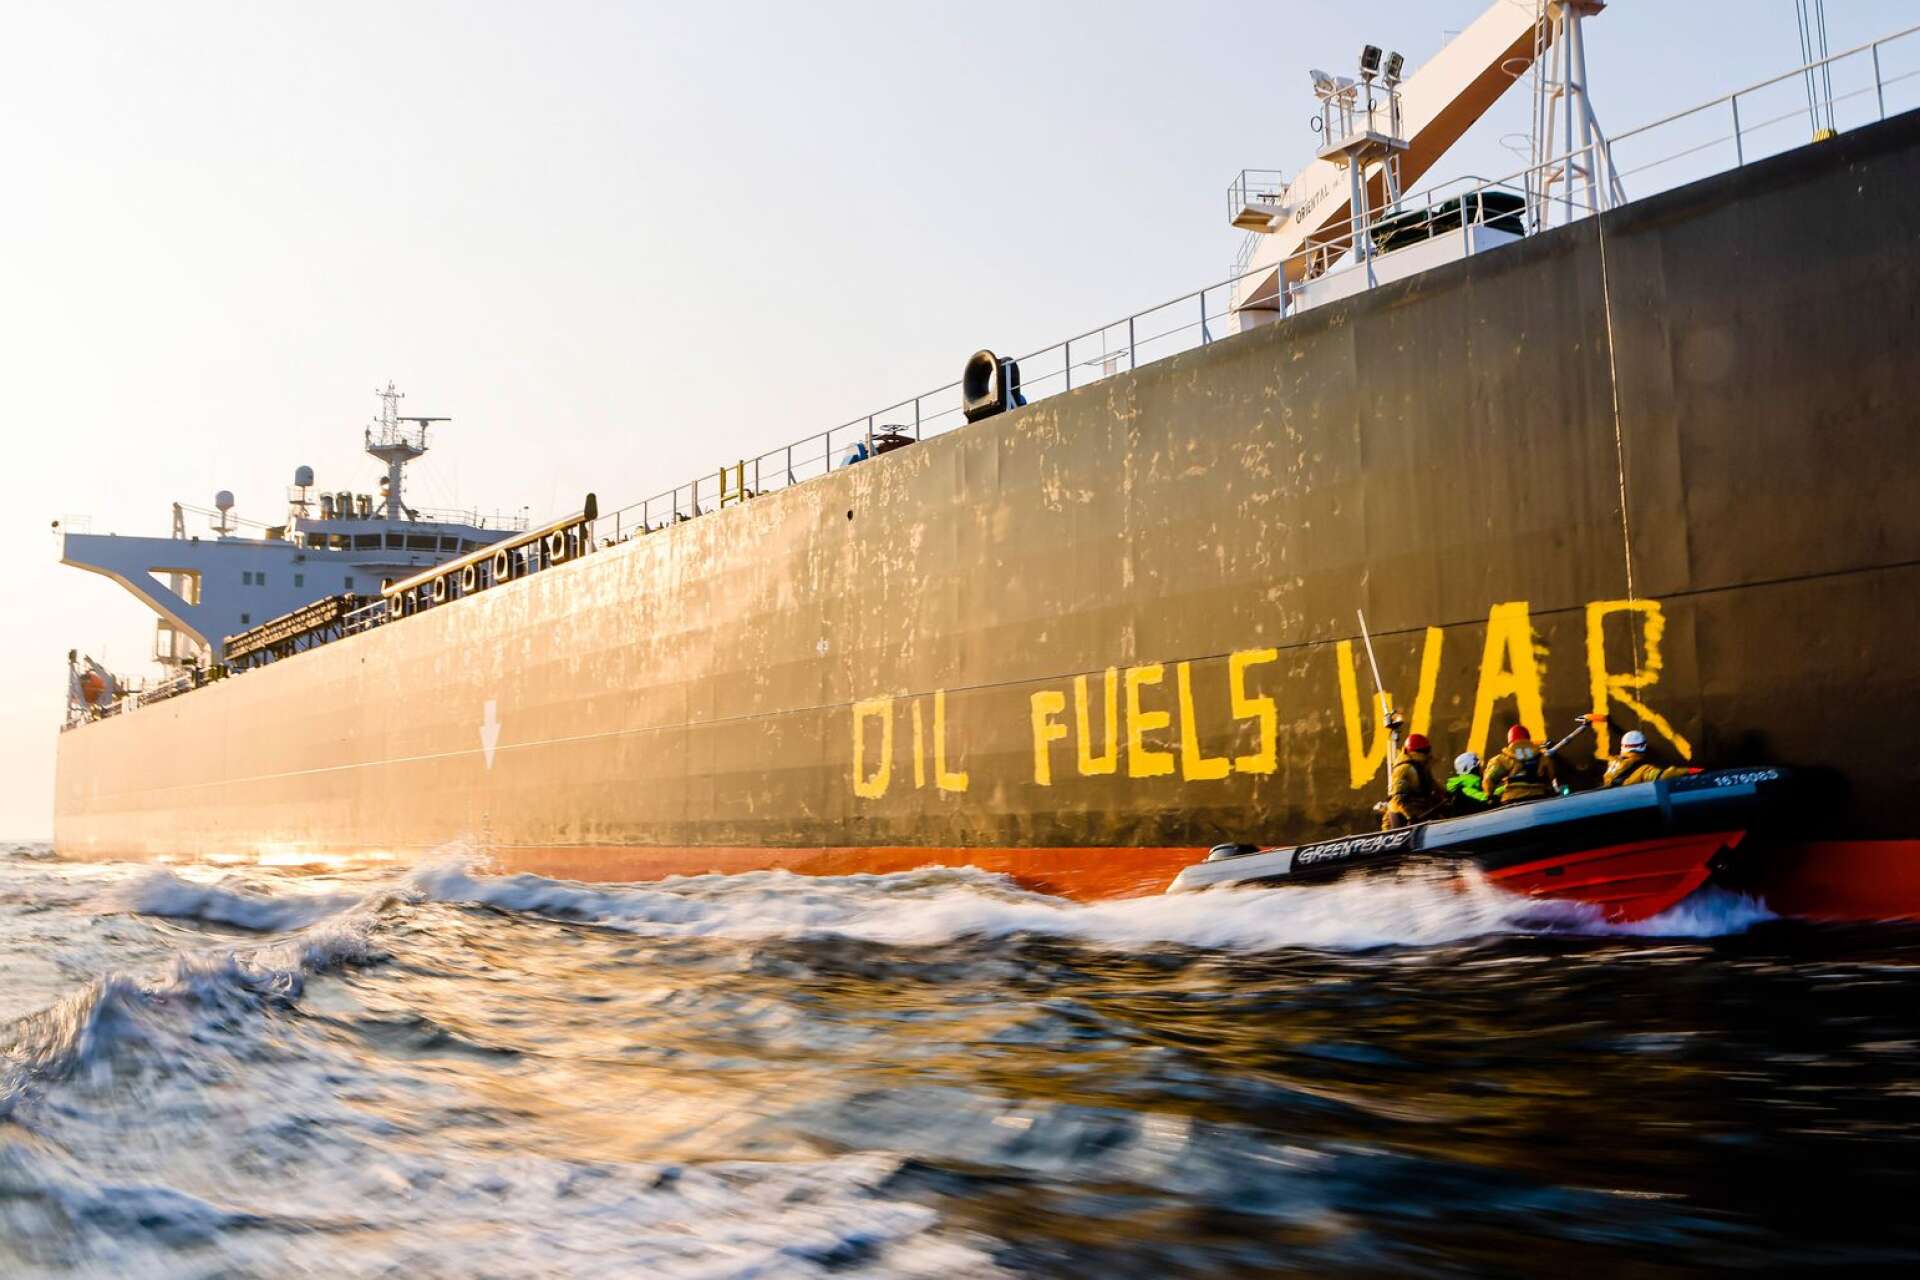 Det internationella beroendet av rysk olja har inneburit att Ryssland kunnat bibehålla sitt autokratiska statsskick istället för att demokratiseras. På bilden en oljetanker med rysk olja som aktivister från miljöorganisationen Greenpeace skrivit ”Oil fuels war” på. 